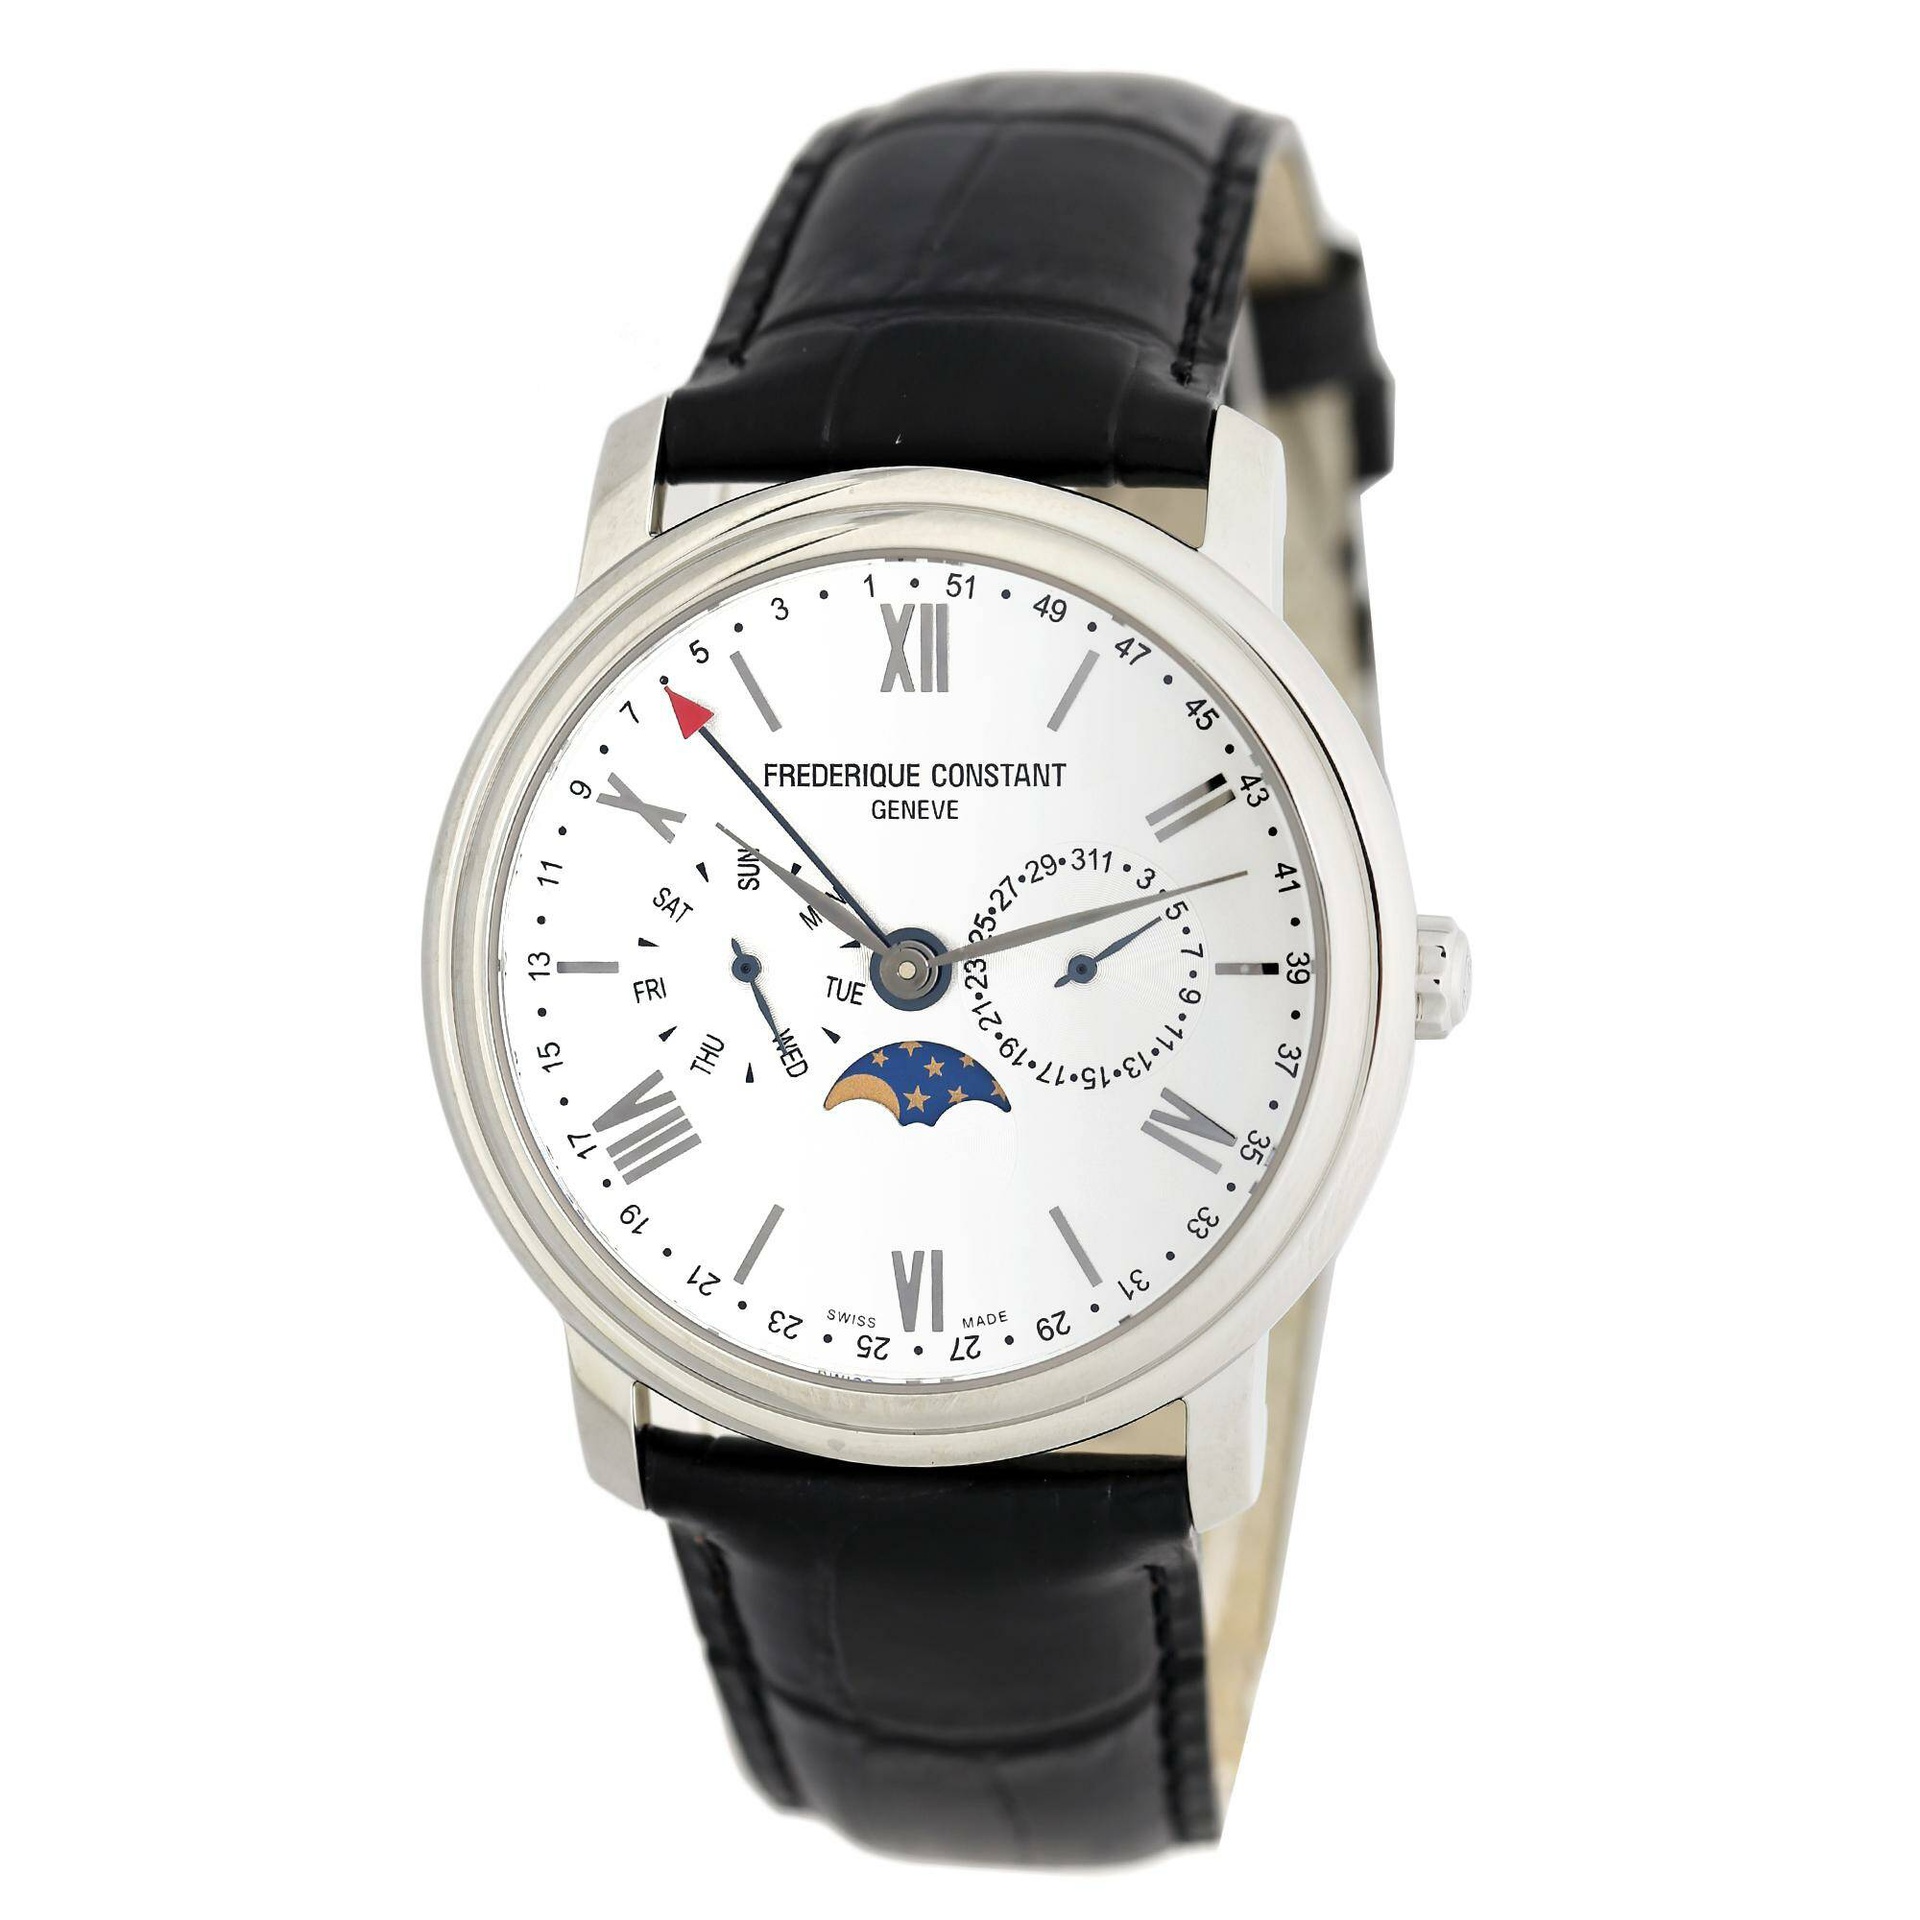 Frederique Constant Business Timer là mẫu đồng hồ dành cho những người bận rộn, mặt đồng hồ lớn hiển thị đầy đủ các thông tin thời gian giúp mẫu phụ kiện trở thành phụ kiện 'đắc lực' cho người bận rộn.